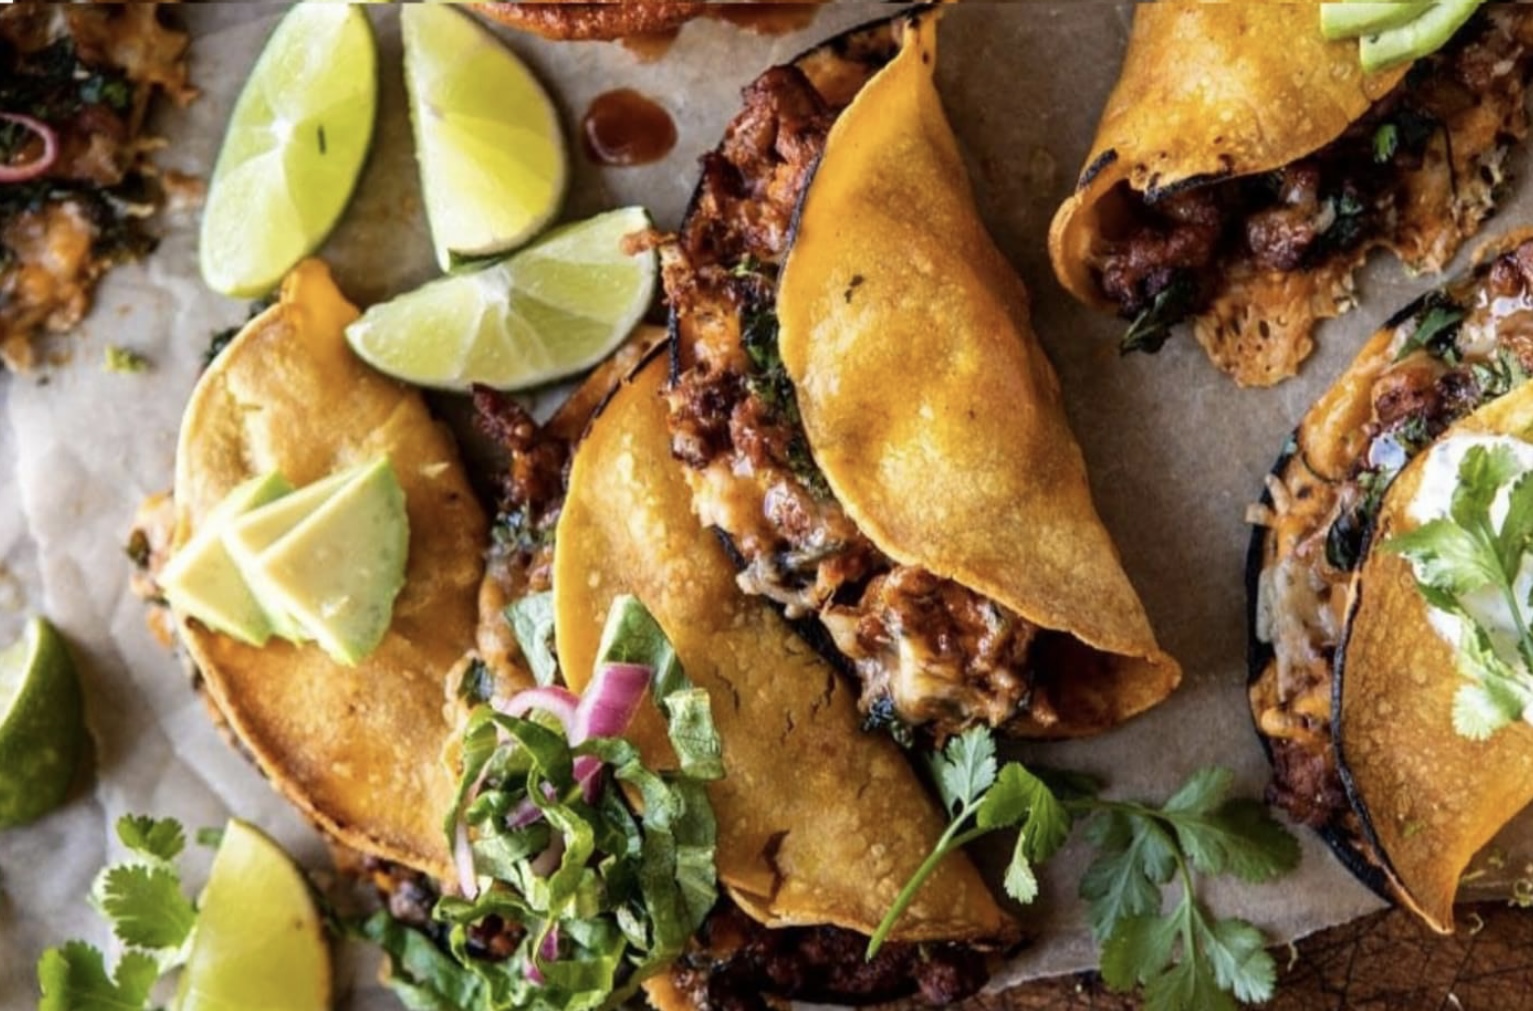 Montreal Restaurant Guide: Tacos Don Rigo